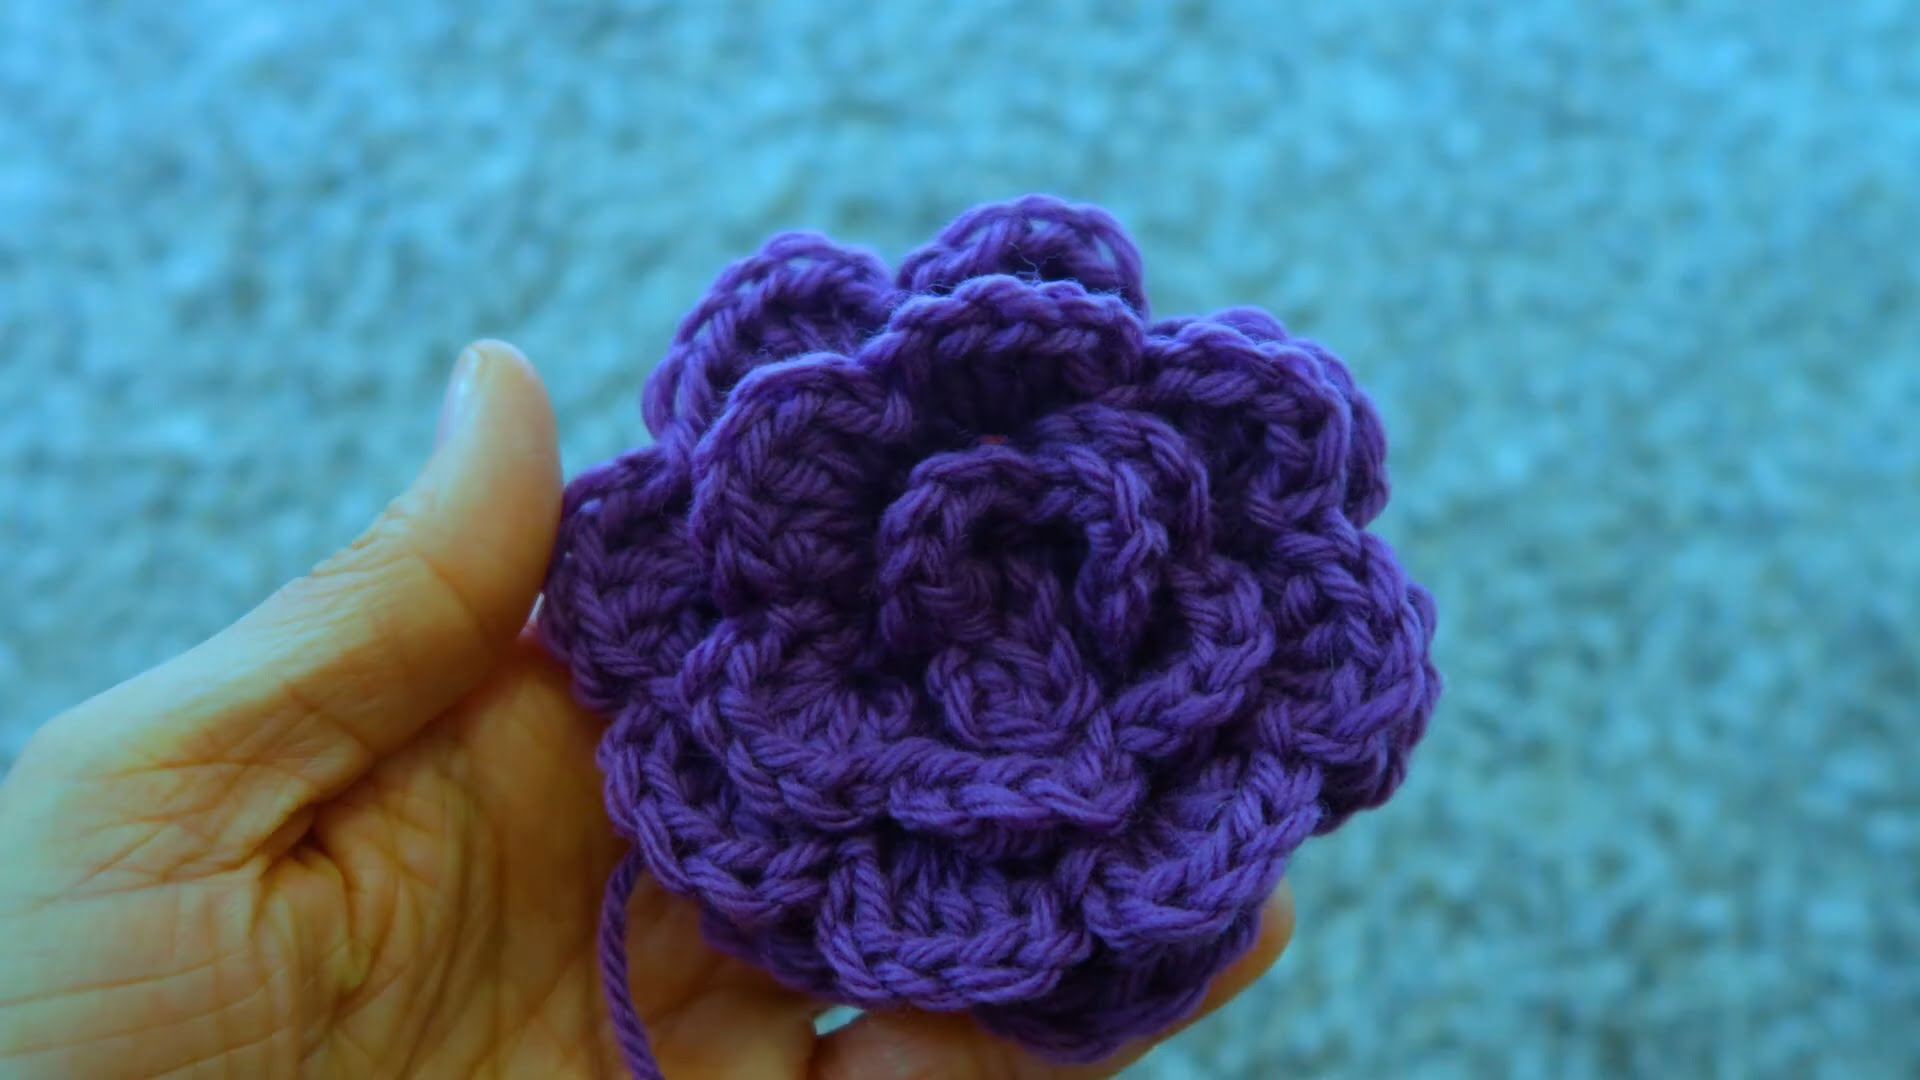 Crochet Rose Patterns For Beginners